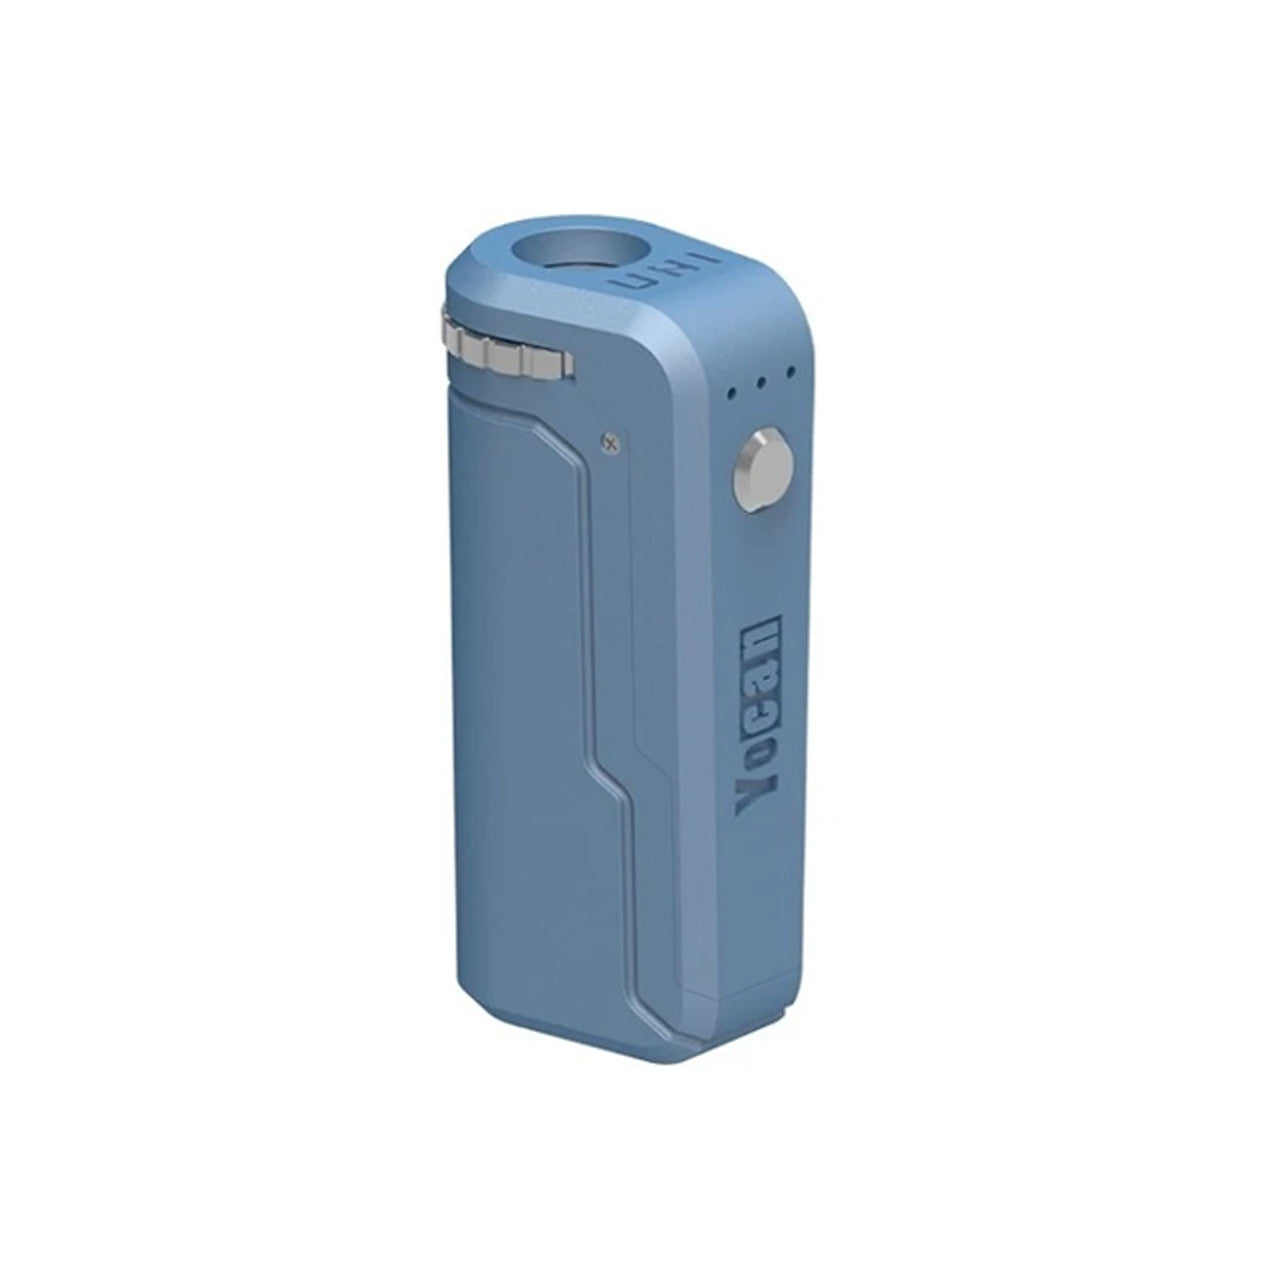 Yocan UNI 650mAh Universal Carto Battery Mod - Airy Blue